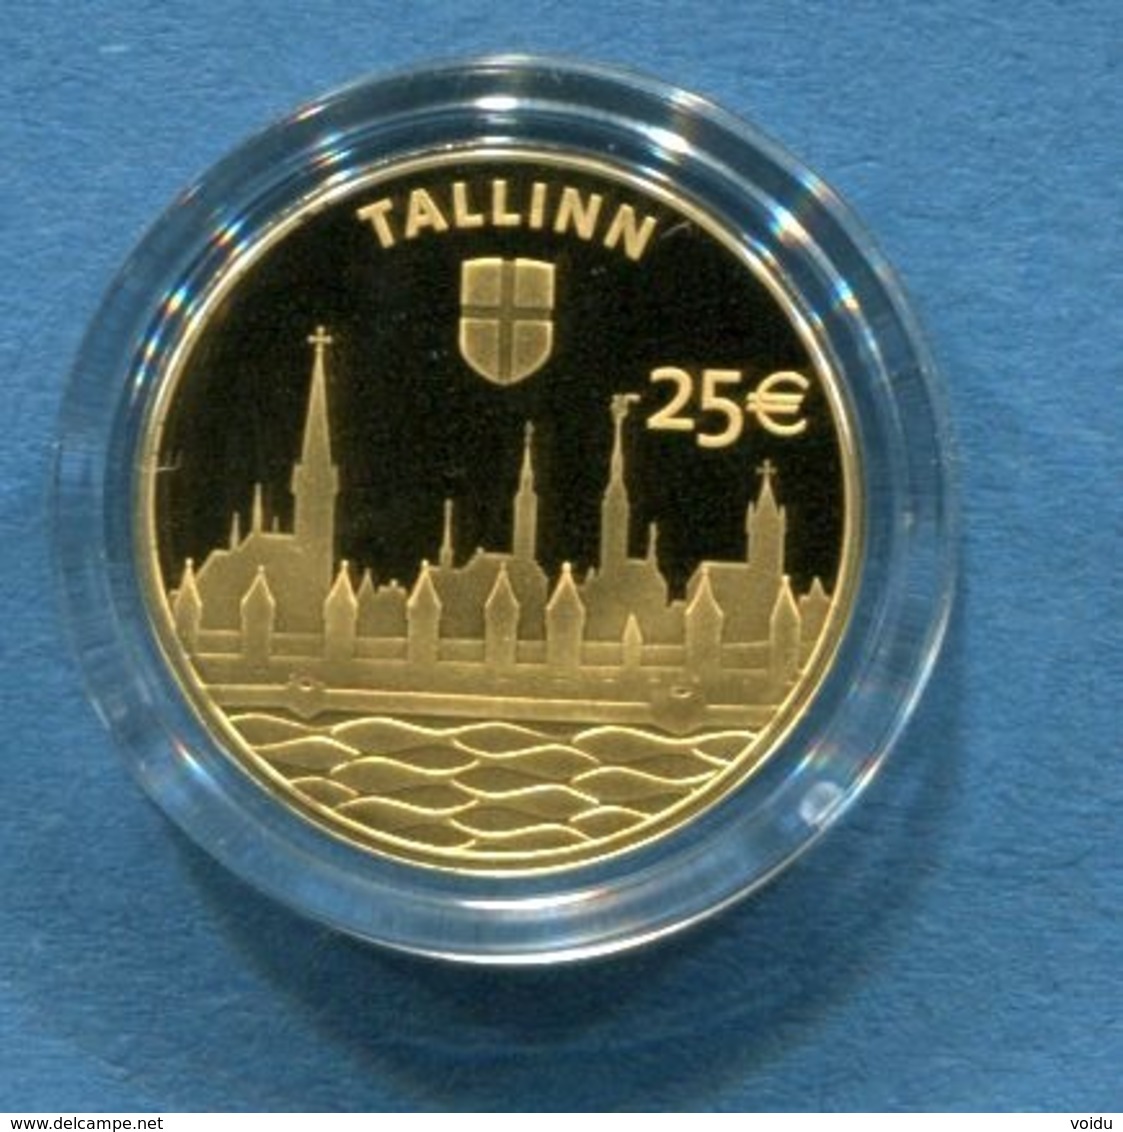 ESTONIA 25 &euro; Euro GOLD COLLECTOR COIN 2017 - Hanseatic Tallinn - Estland